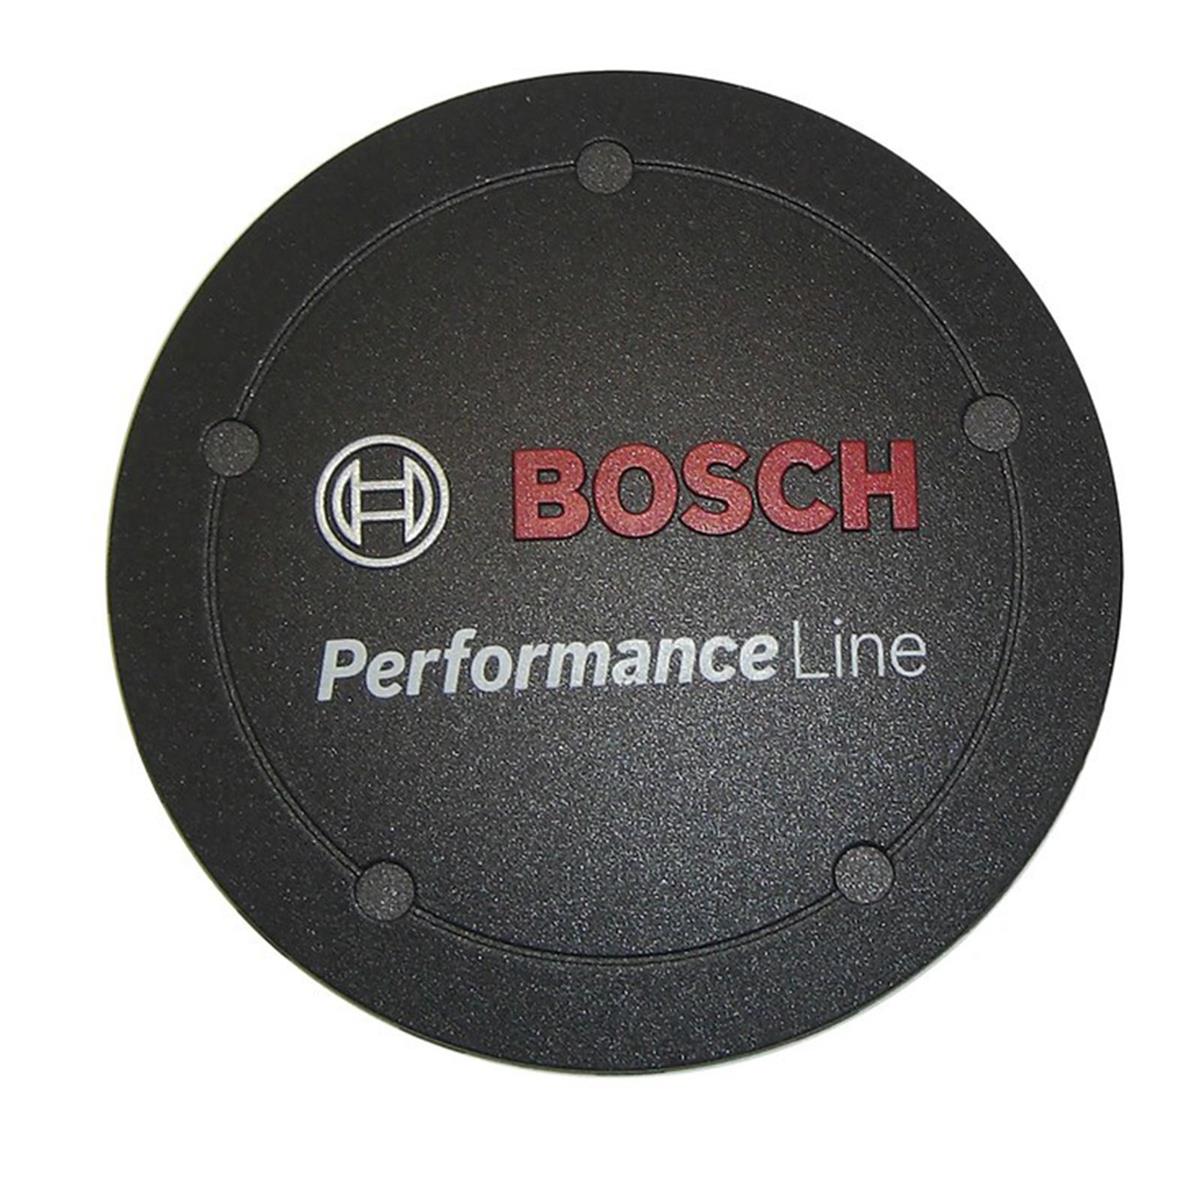 BOSCH Logo Deckel Performance Line schwarz